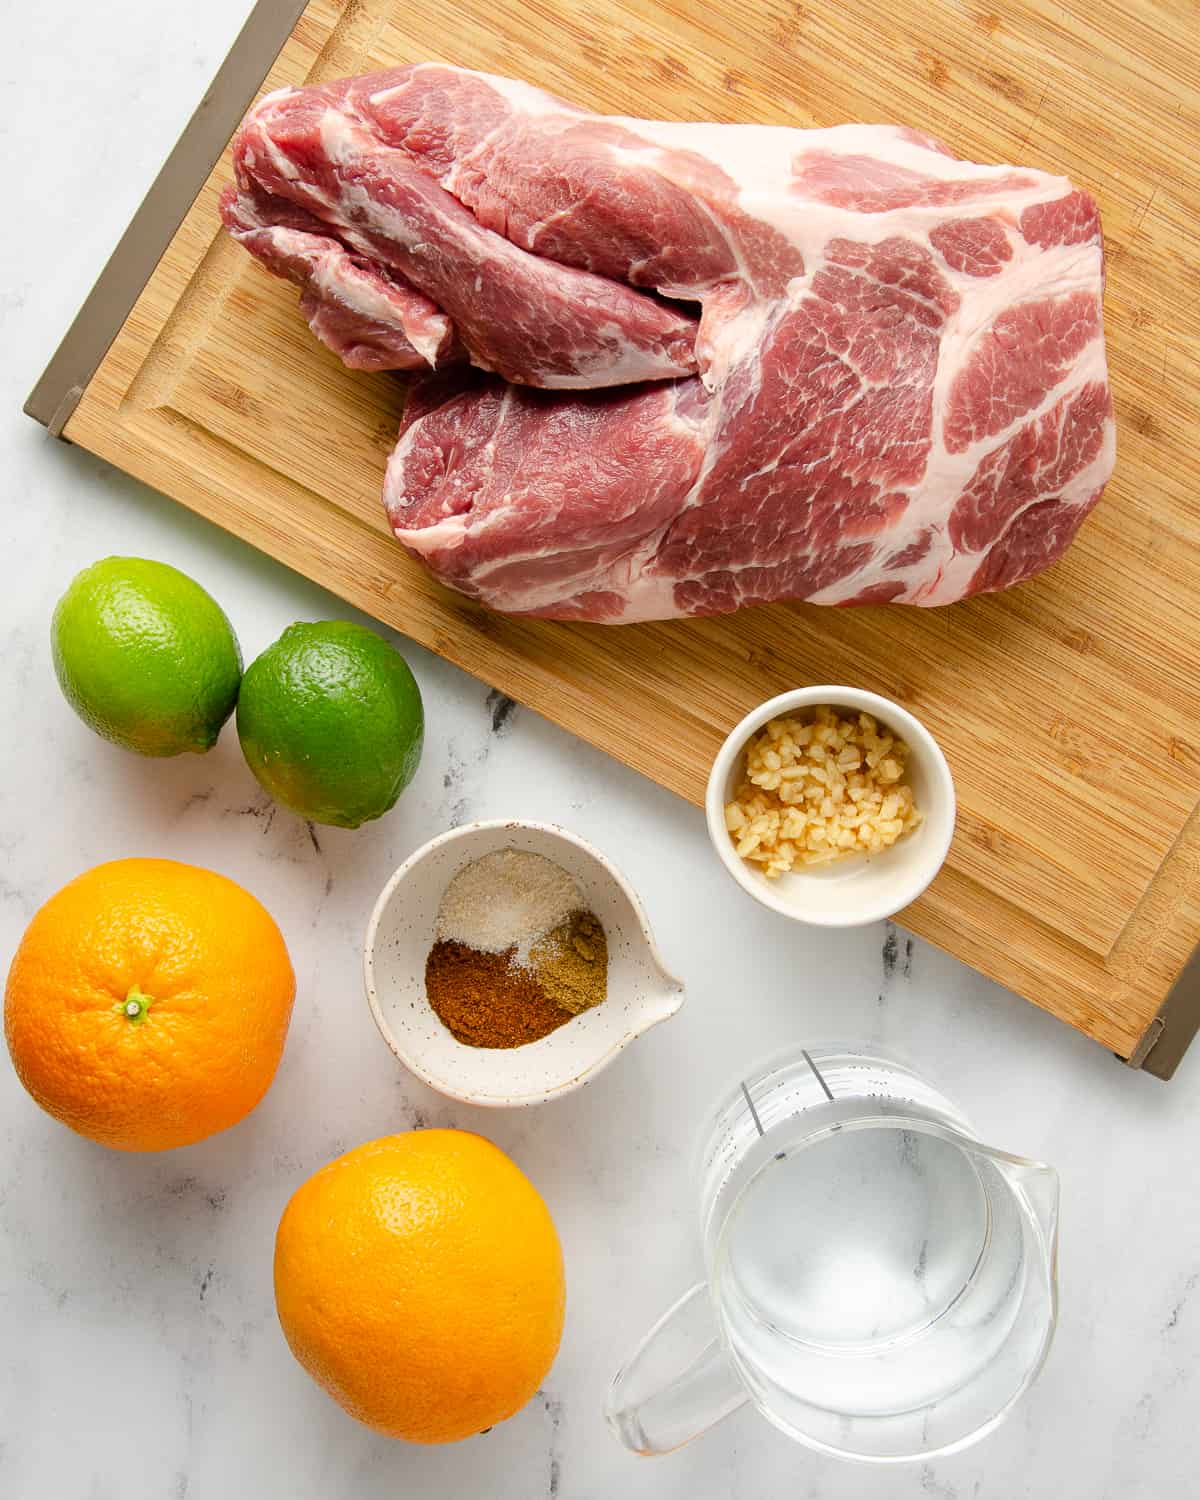 Ingredients needed for dutch oven carnitas: pork shoulder, oranges, limes, water, seasonings, and garlic. 